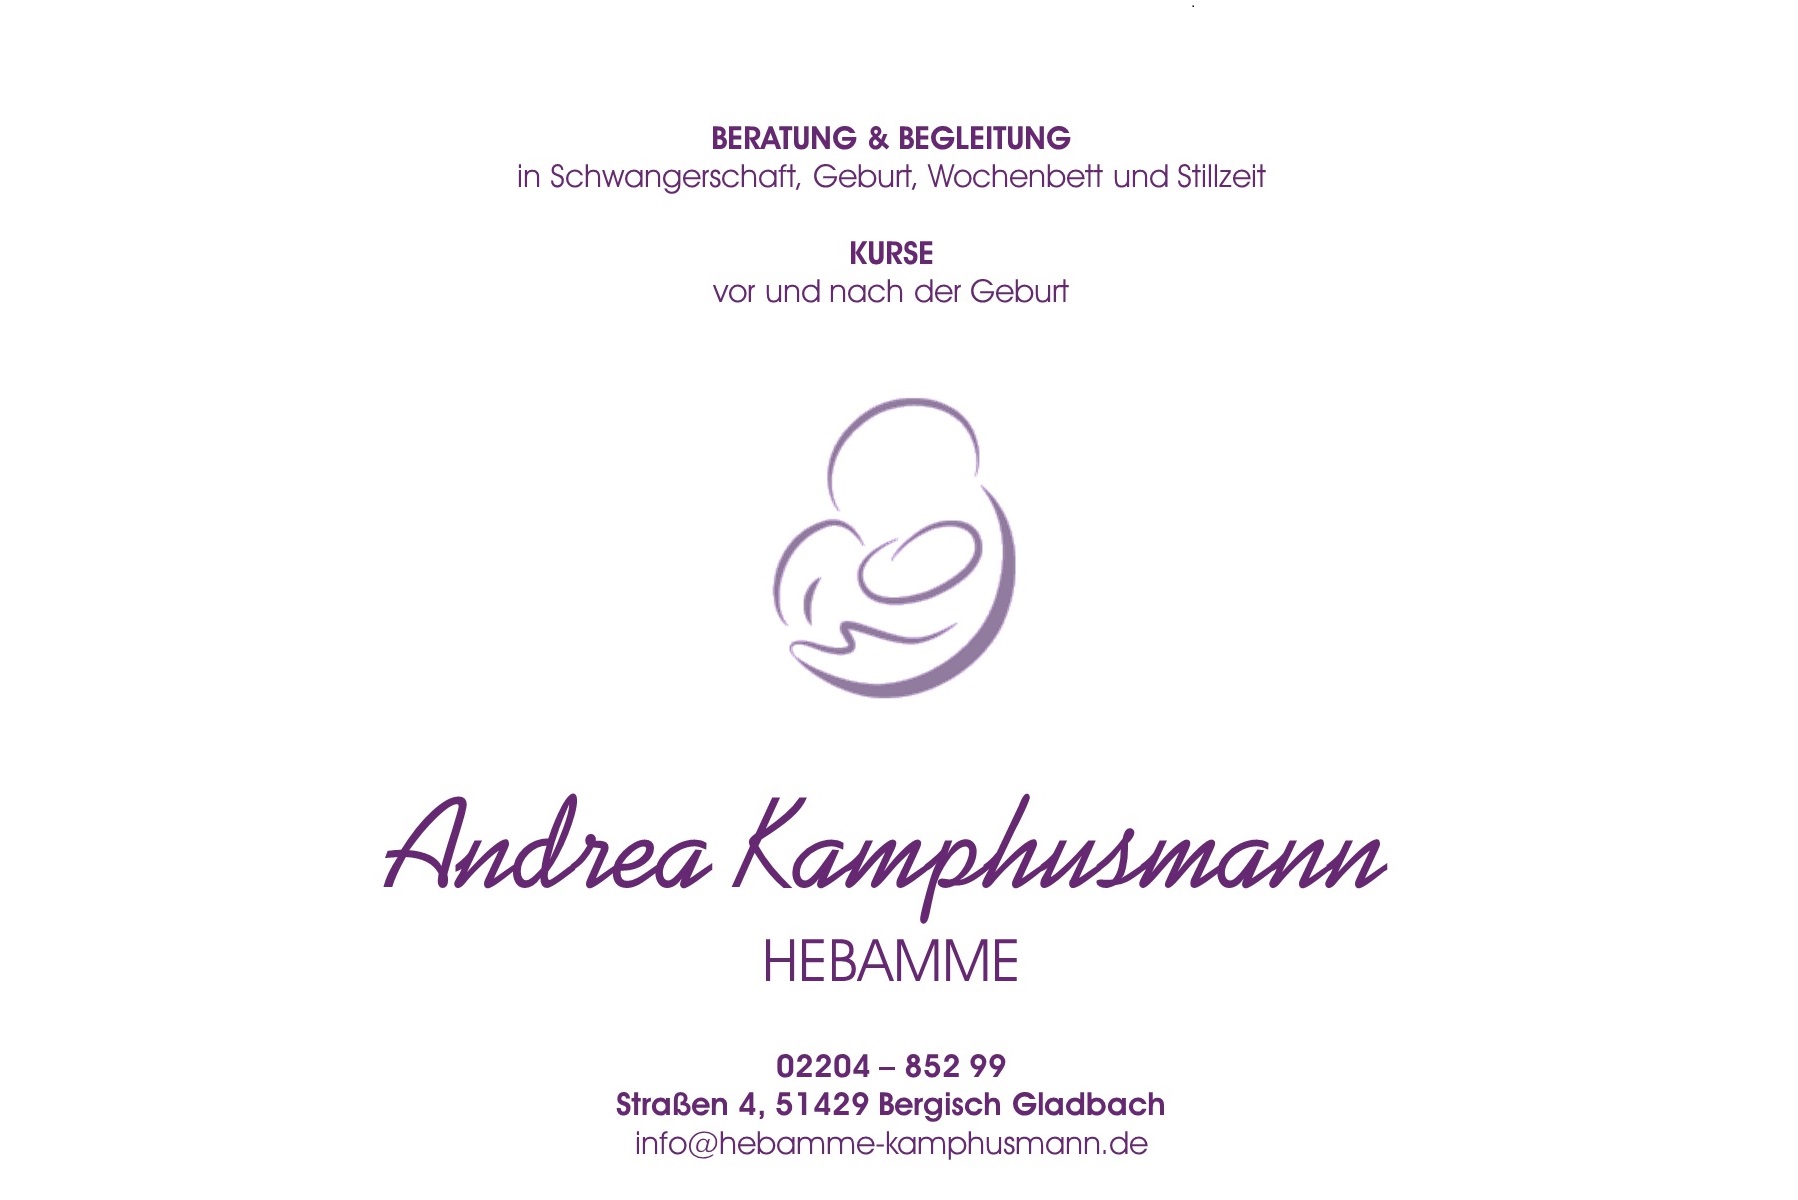 Andrea Kamphusmann - Hebamme